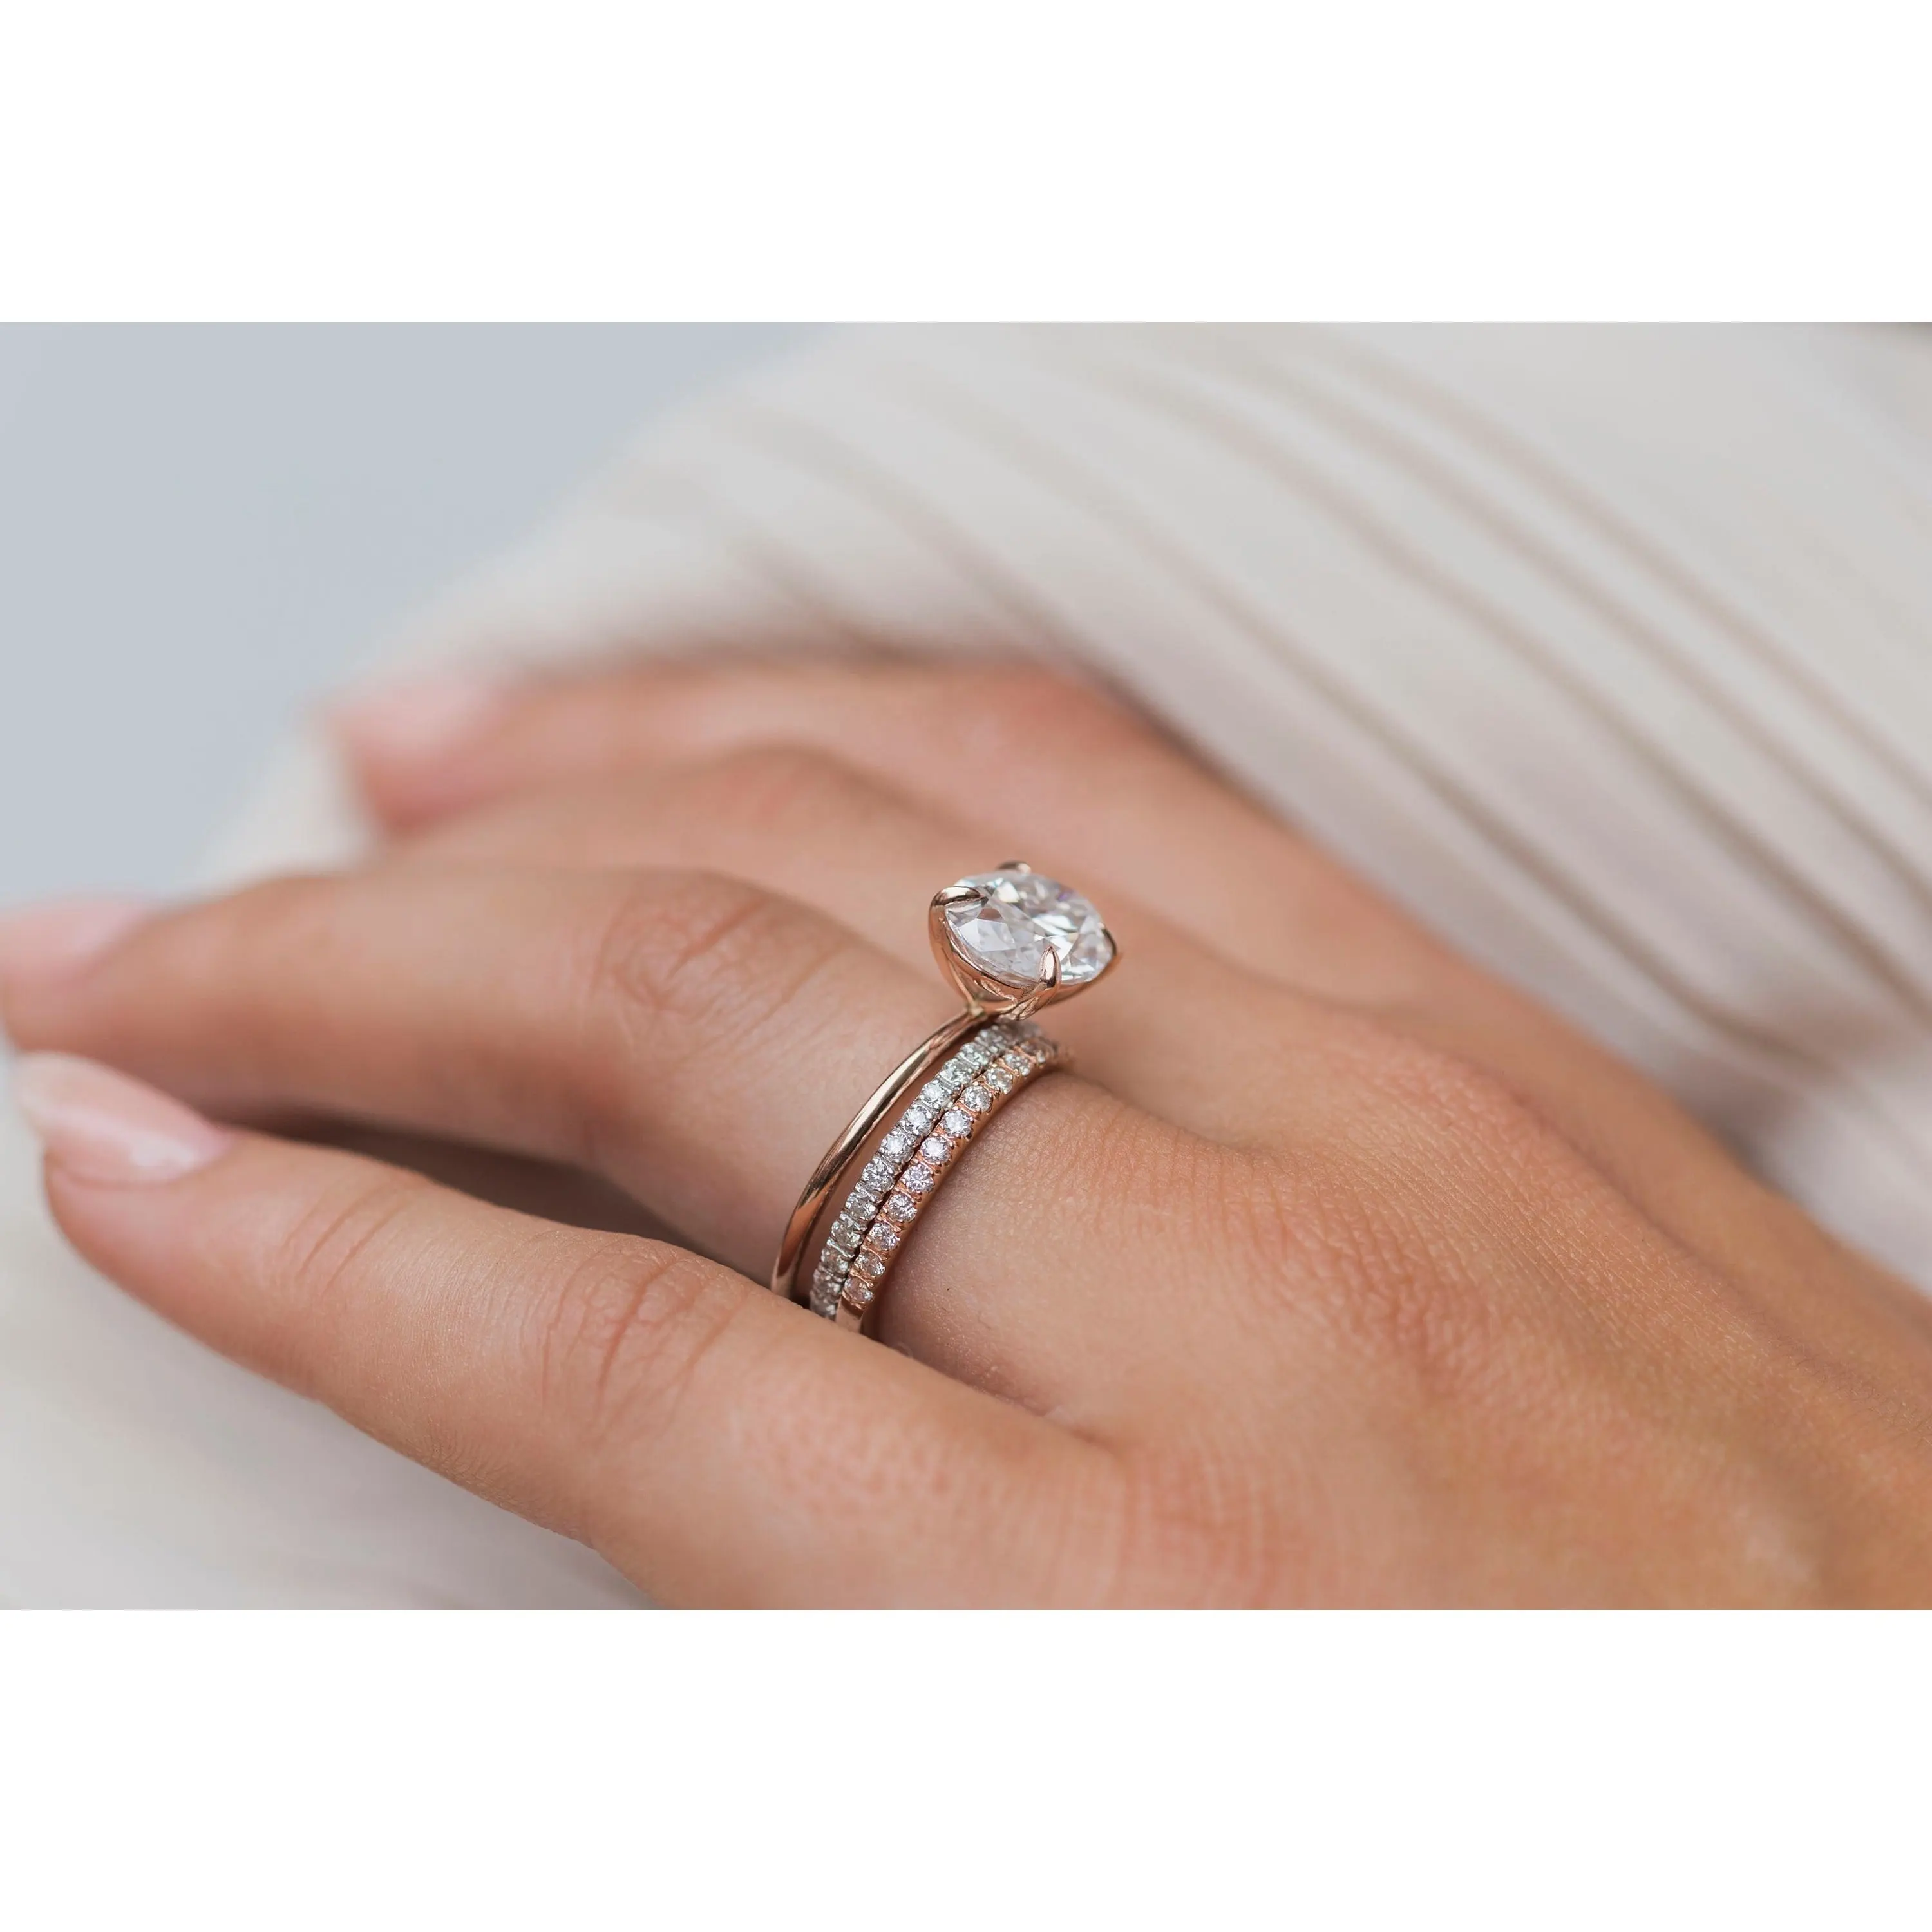 Hailer 보석 실험실 성장 타원형 다이아몬드 18k 솔리드 골드 보석 반지 도매 가격